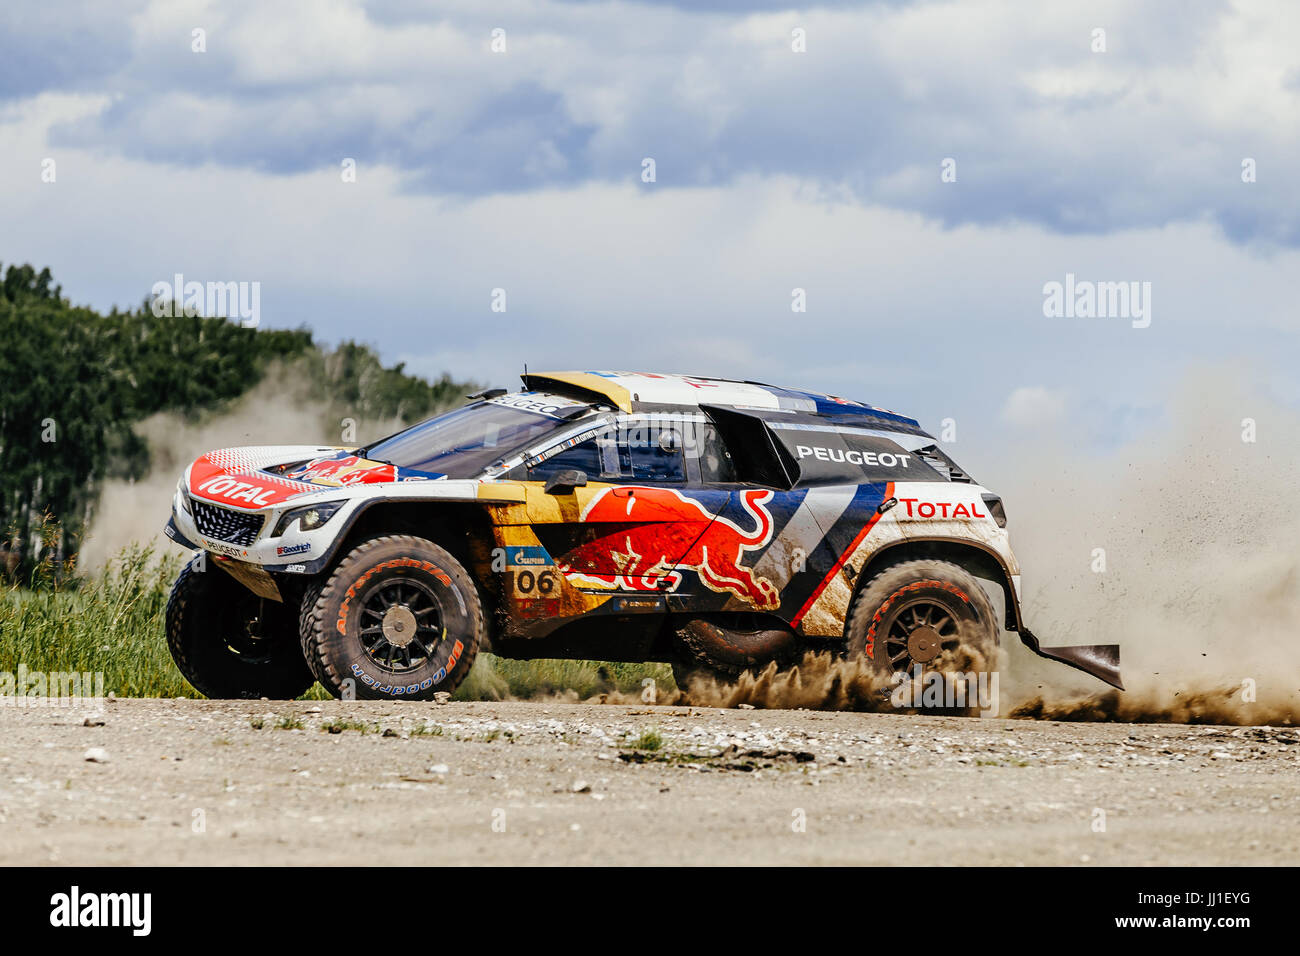 Rallye-Auto Peugeot schalten Staub Straße während der Silk Way Rallye Stockfoto